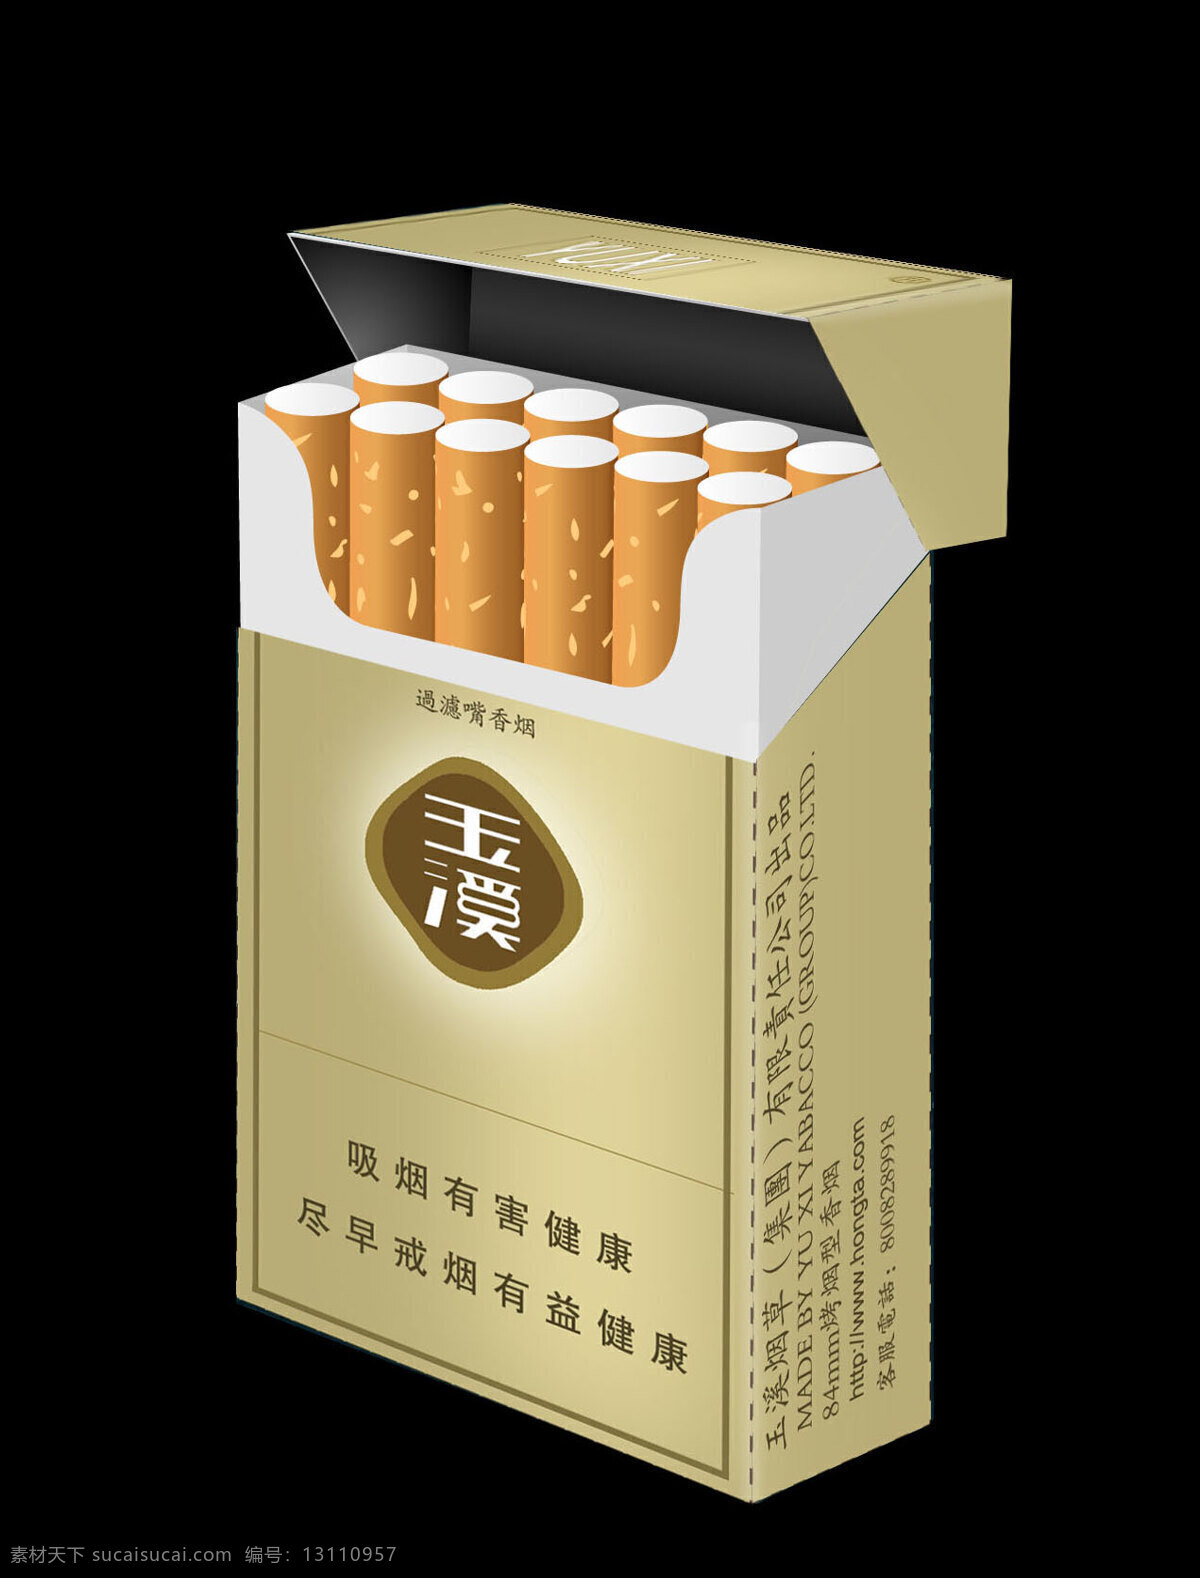 玉溪 烟 包装设计 玉溪包装设计 烟盒 香烟包装